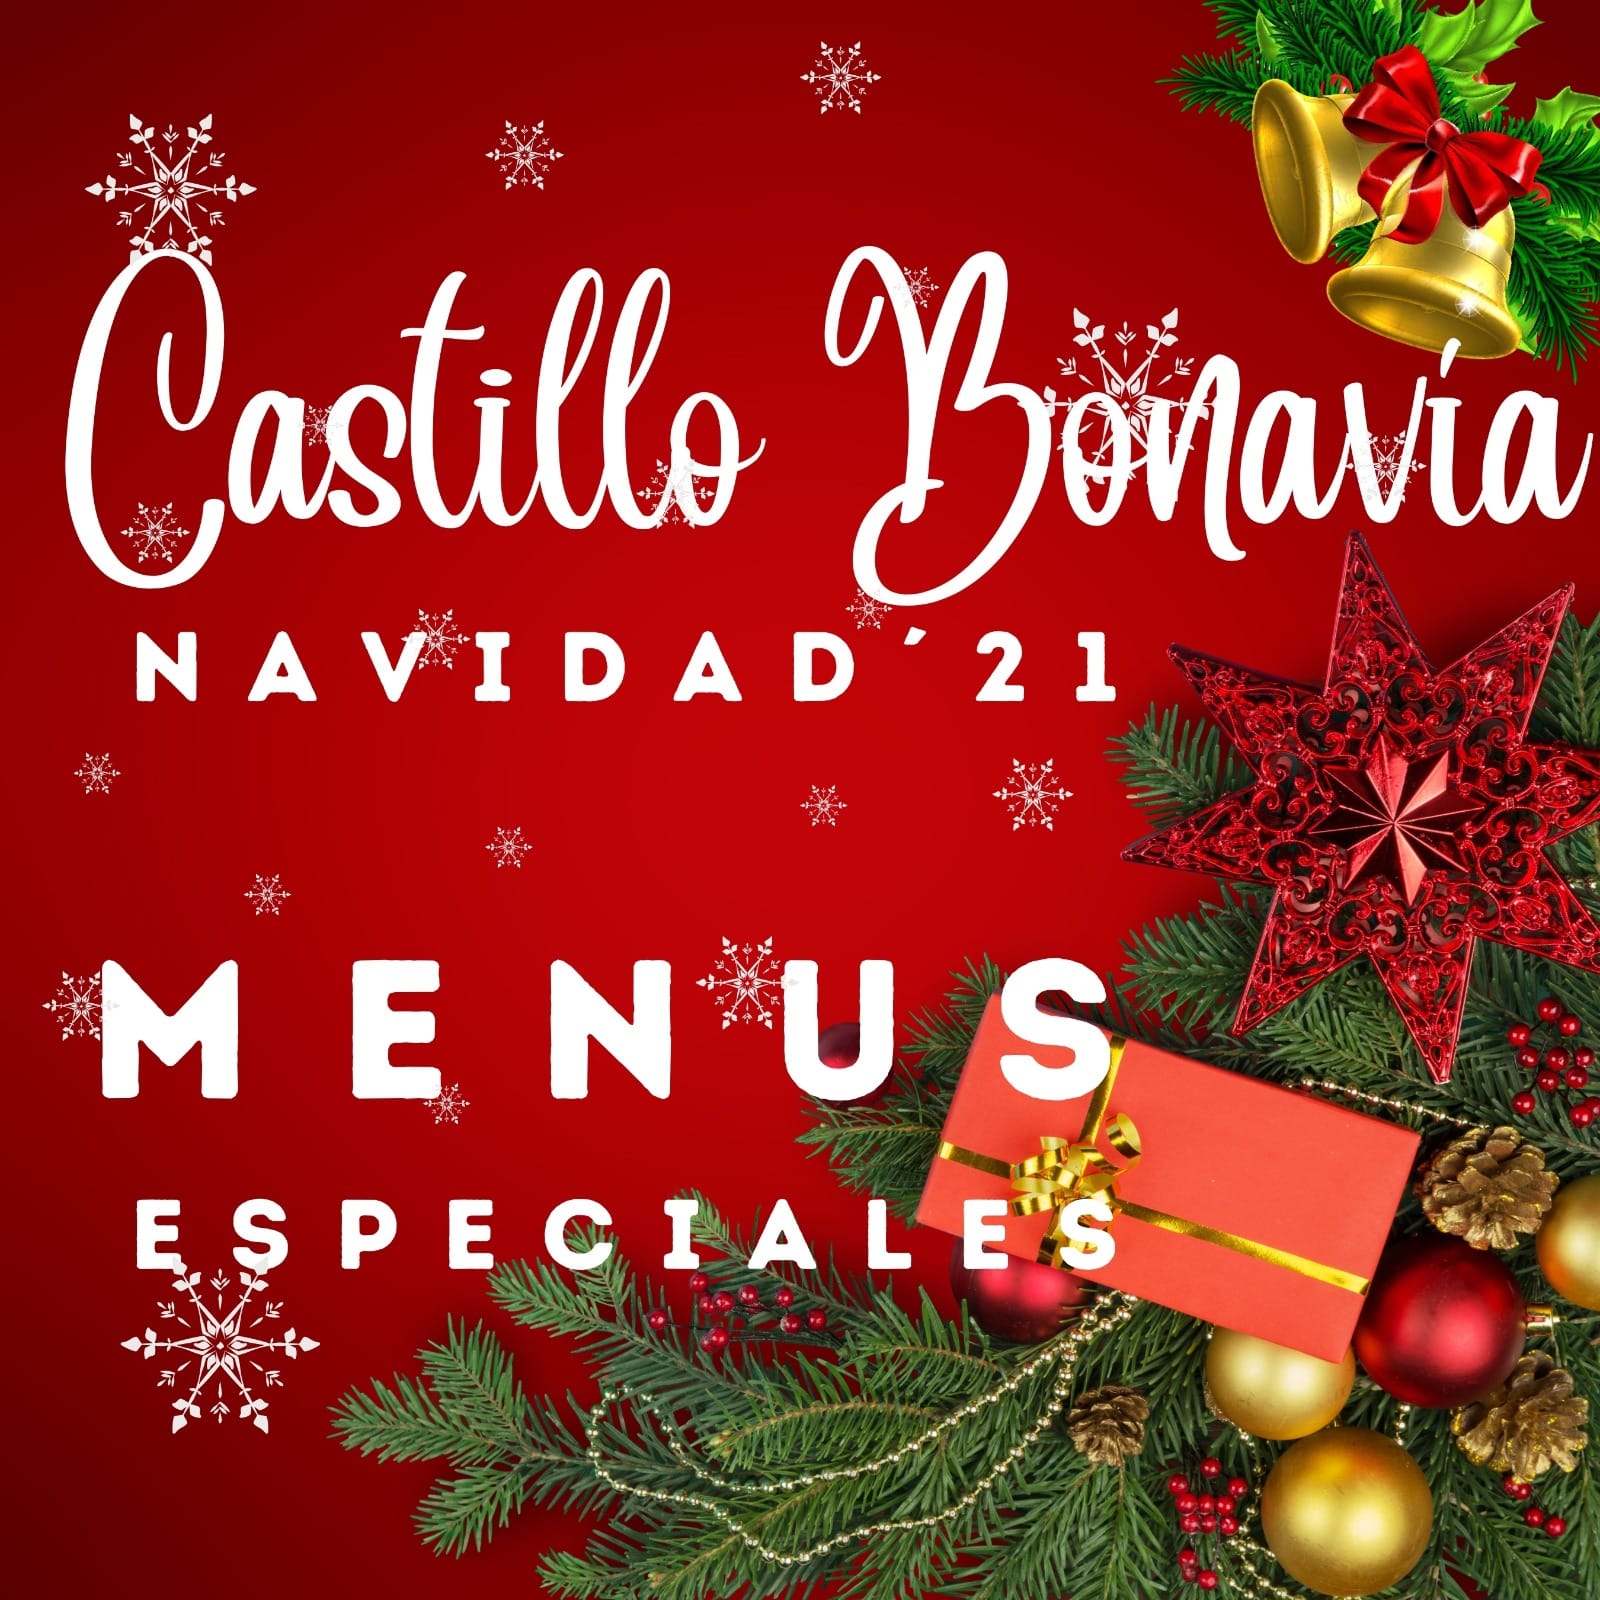 Menus Especiales-Navidad-Castillo Bonavía